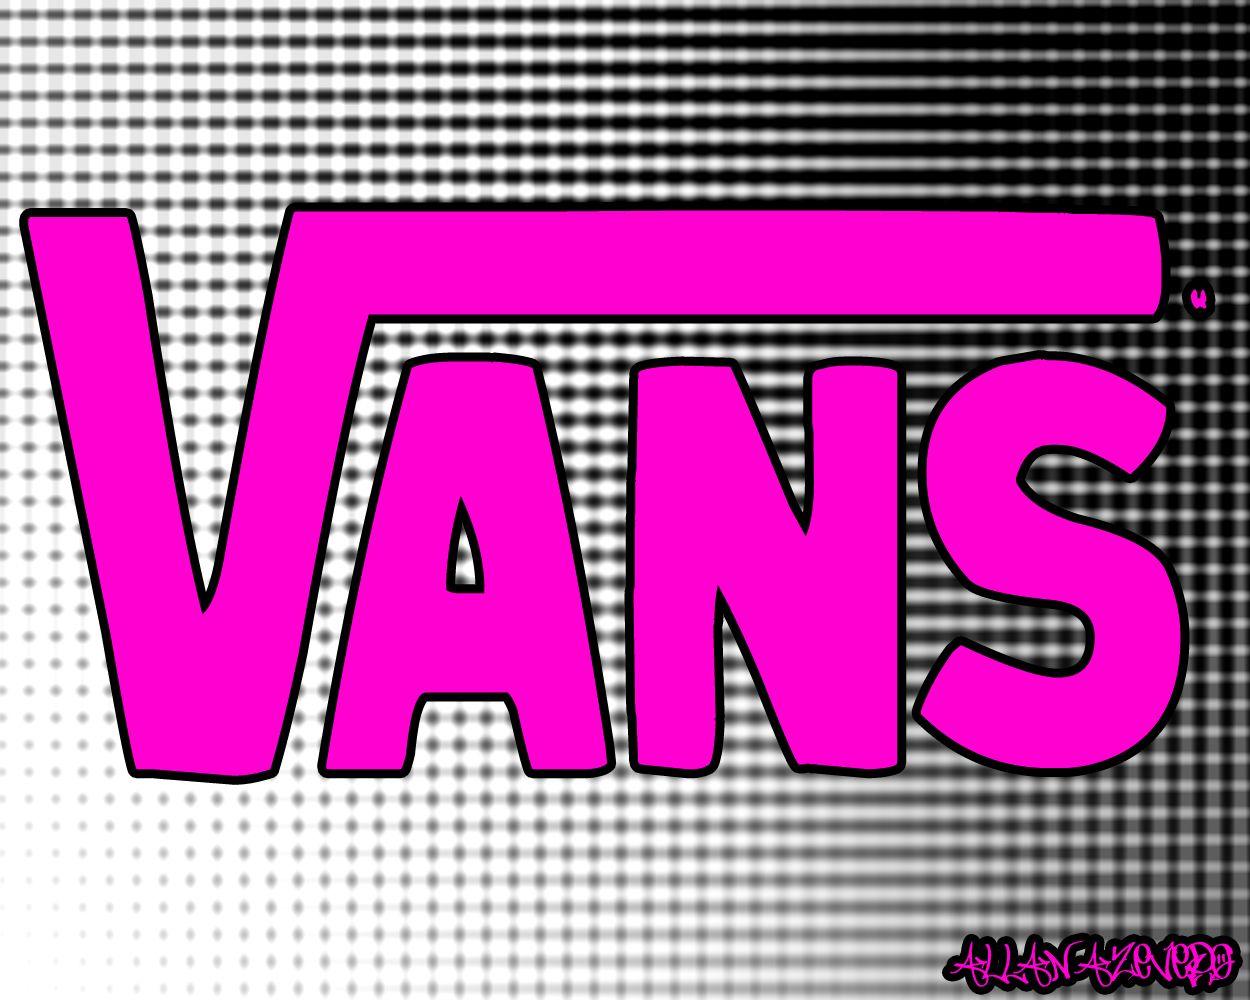 Cool Vans Logo pink. Vans Logo Wallpaper Pink Image